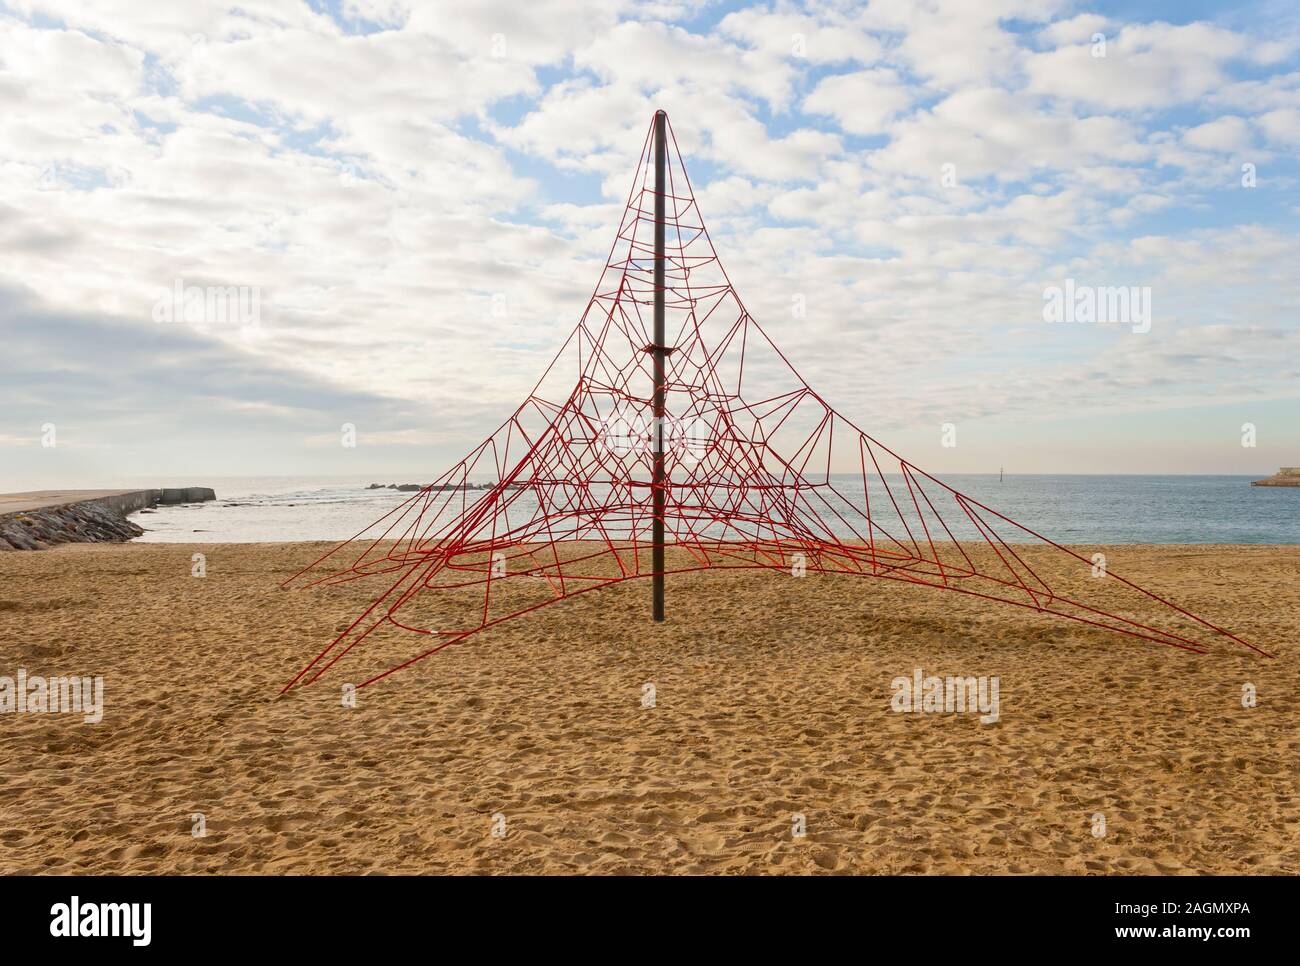 Pyramide de corde rouge vide de jeux pour l'escalade. Personne à la plage et le ciel est nuageux. Banque D'Images